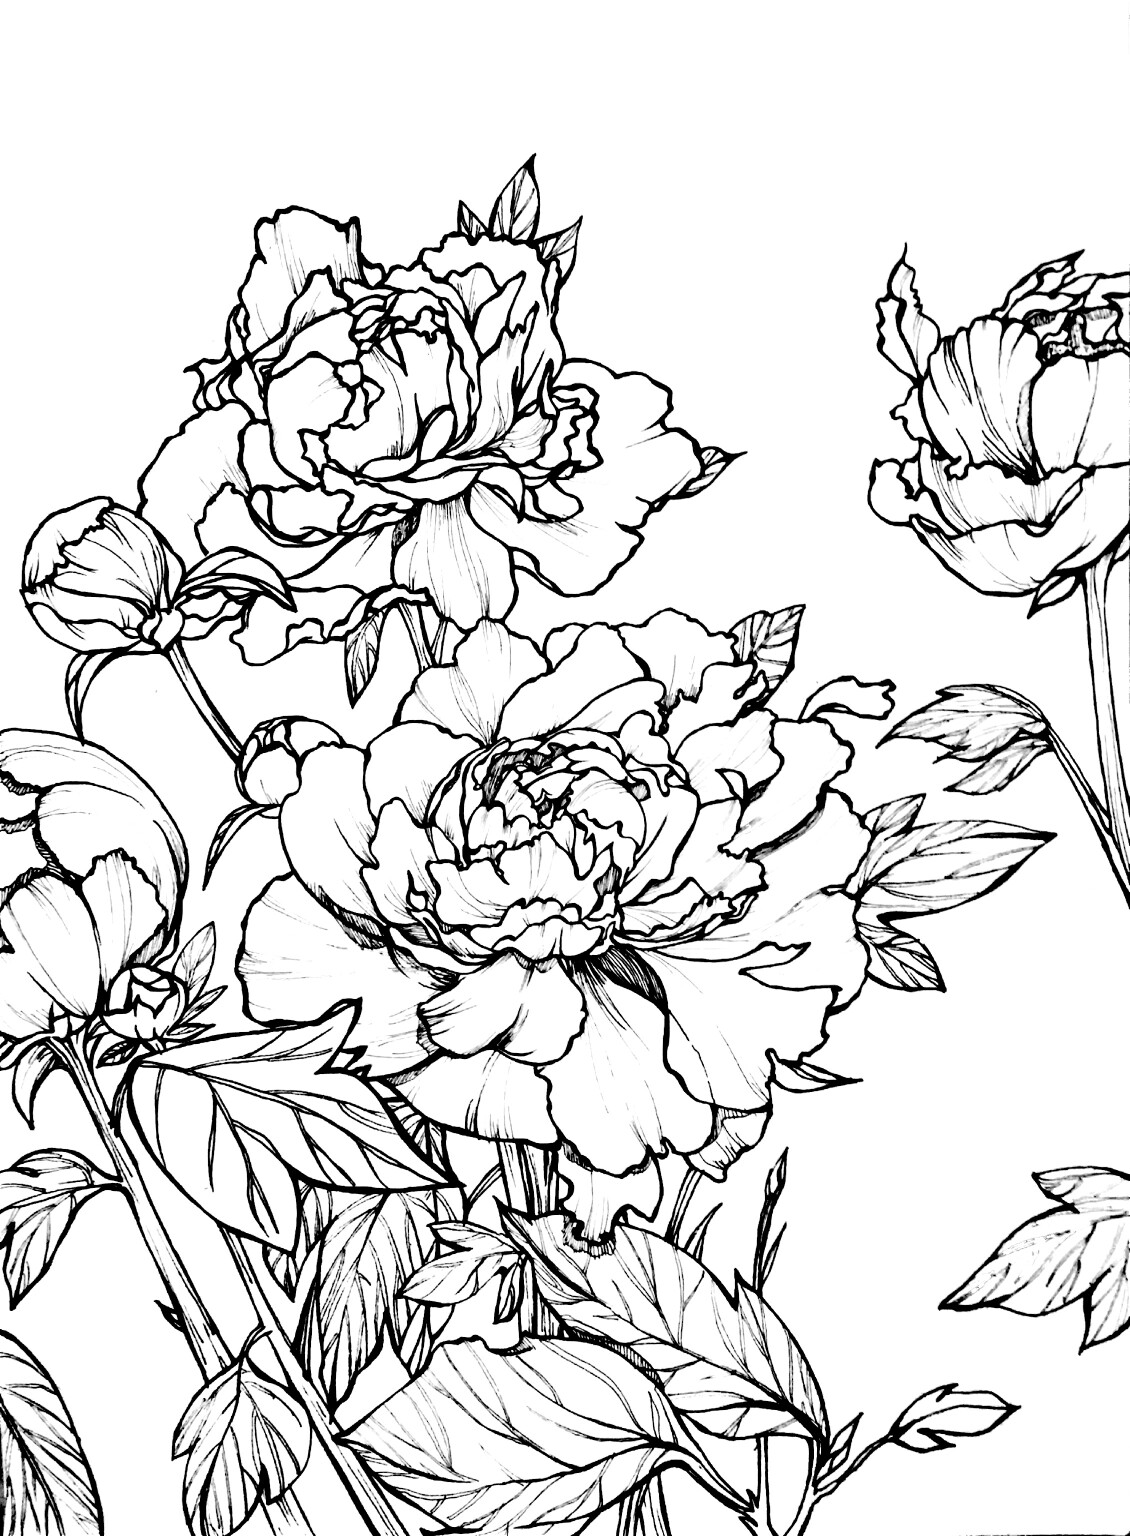 近期手绘植物花卉作业,牡丹.(原照片源自网络,二次创造)